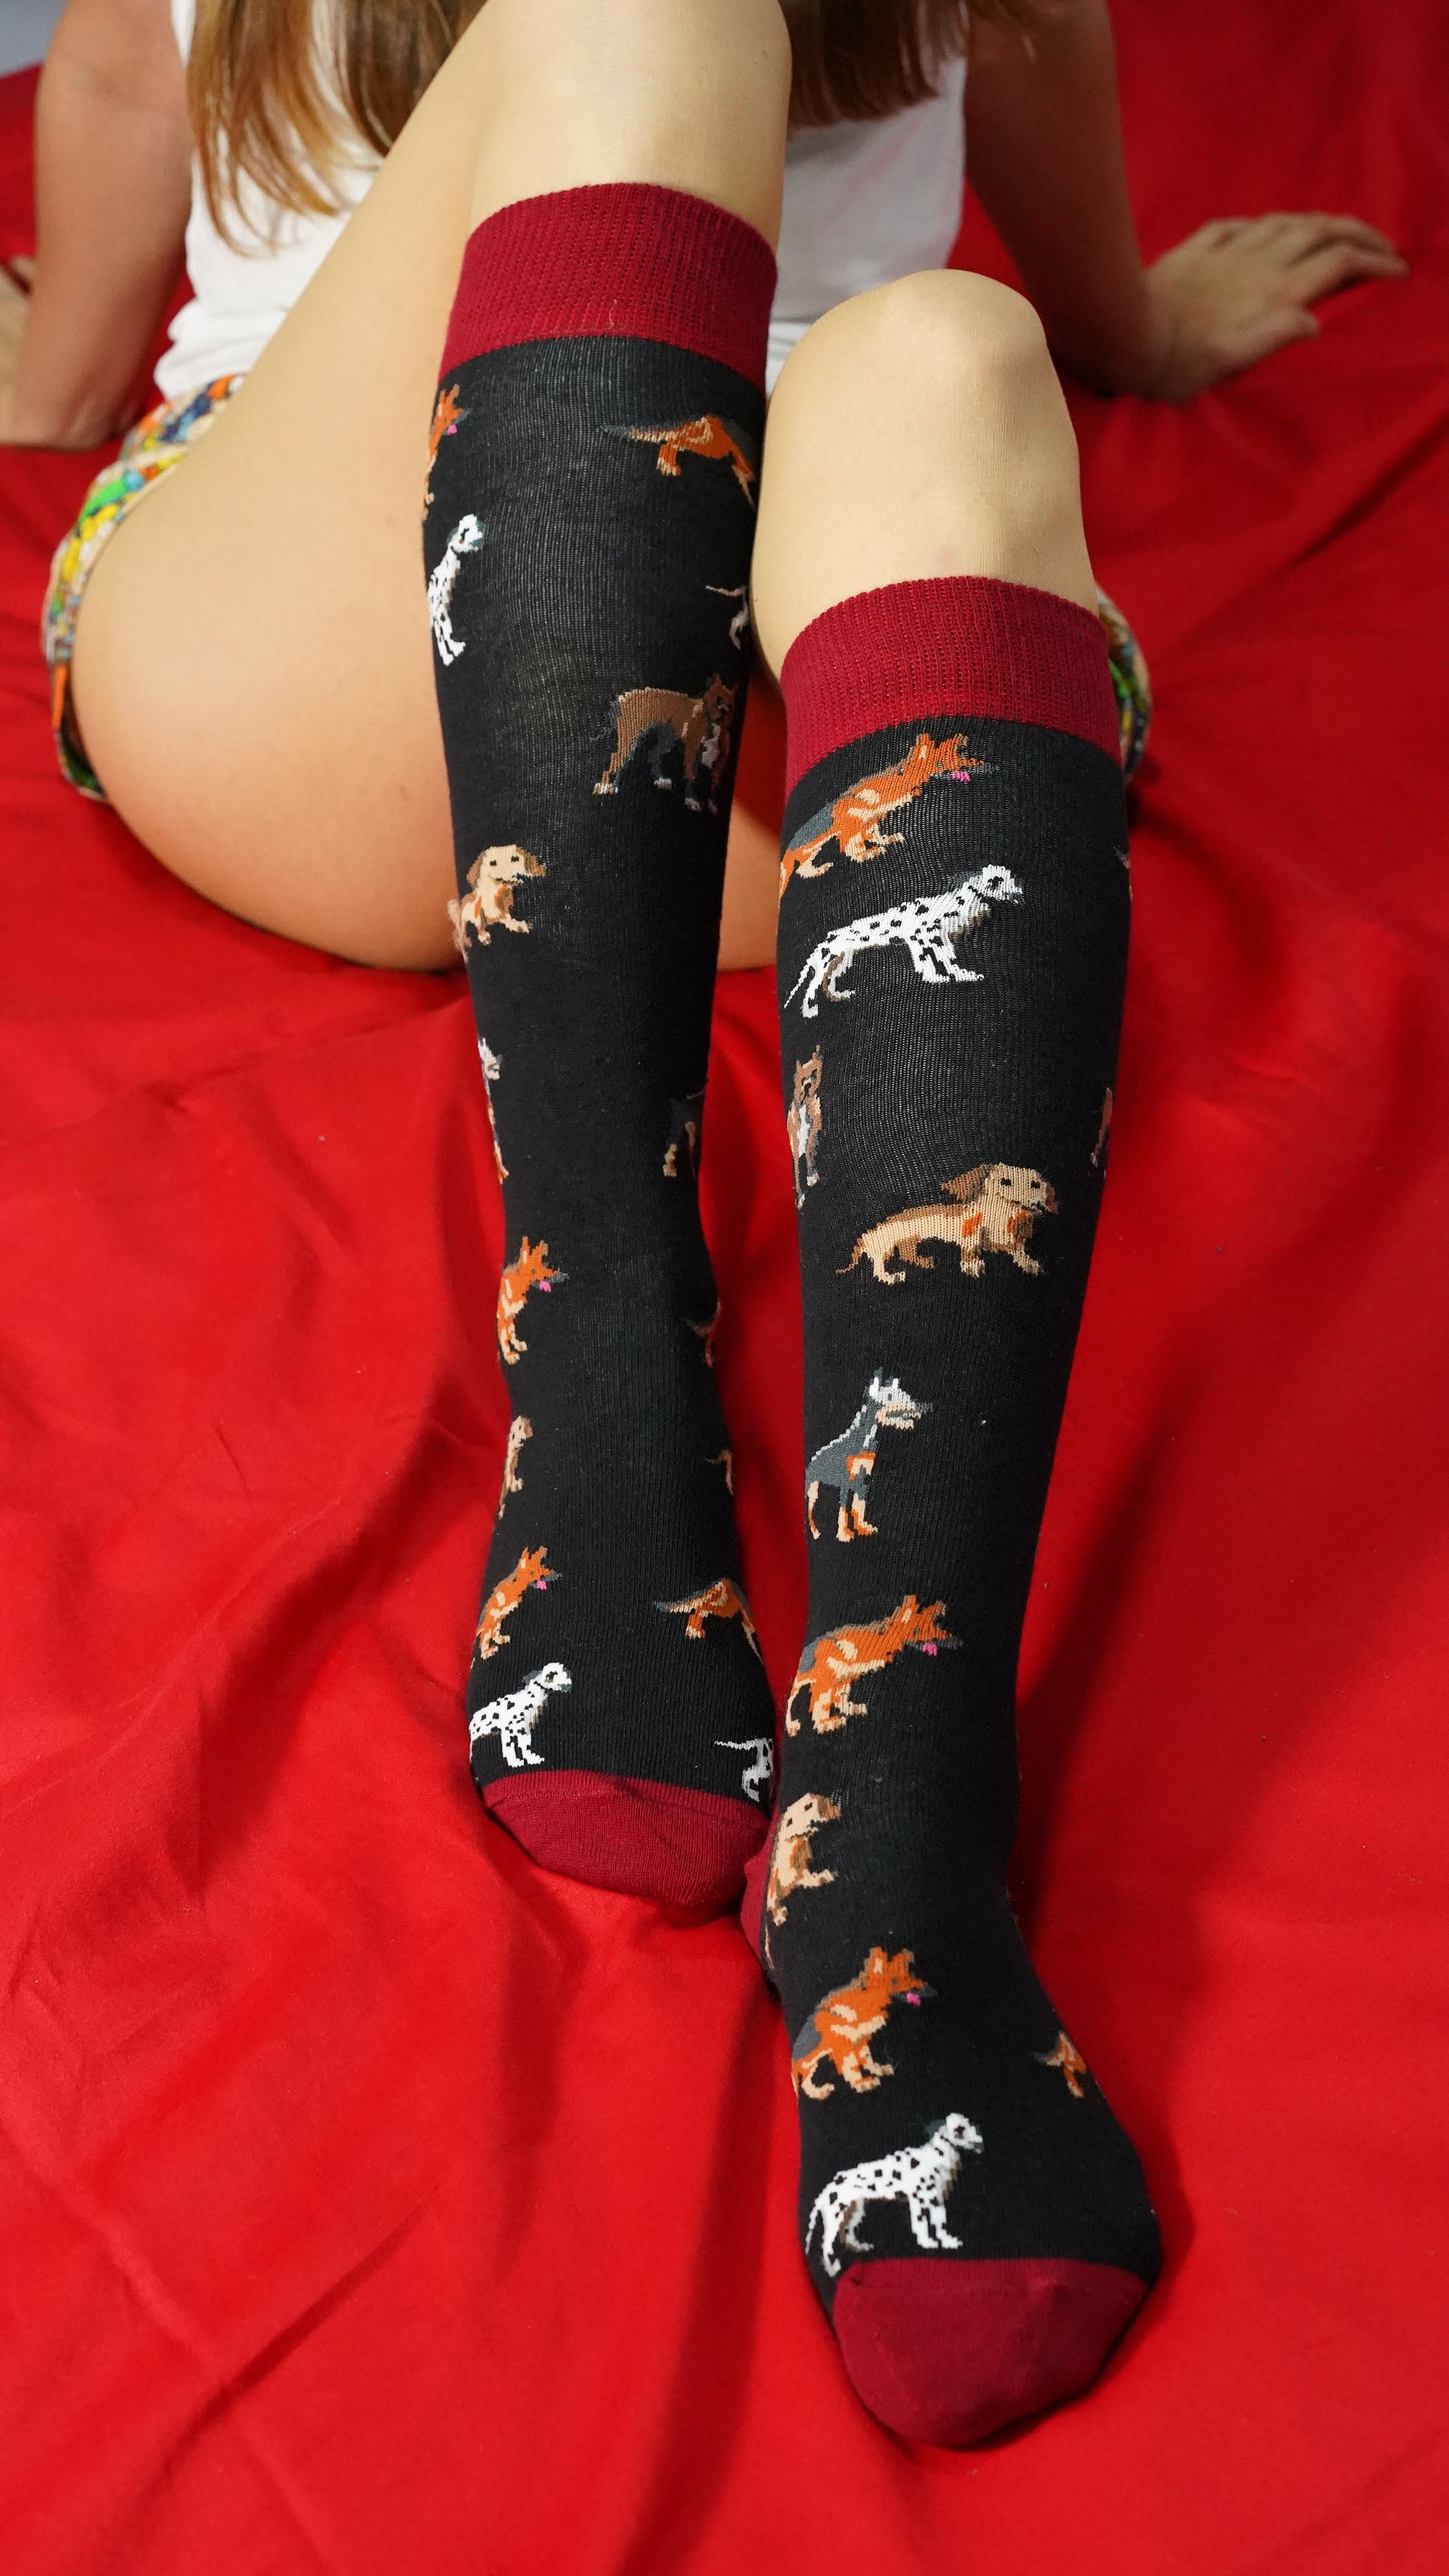 Women's Cute Dogs Knee High Socks Set